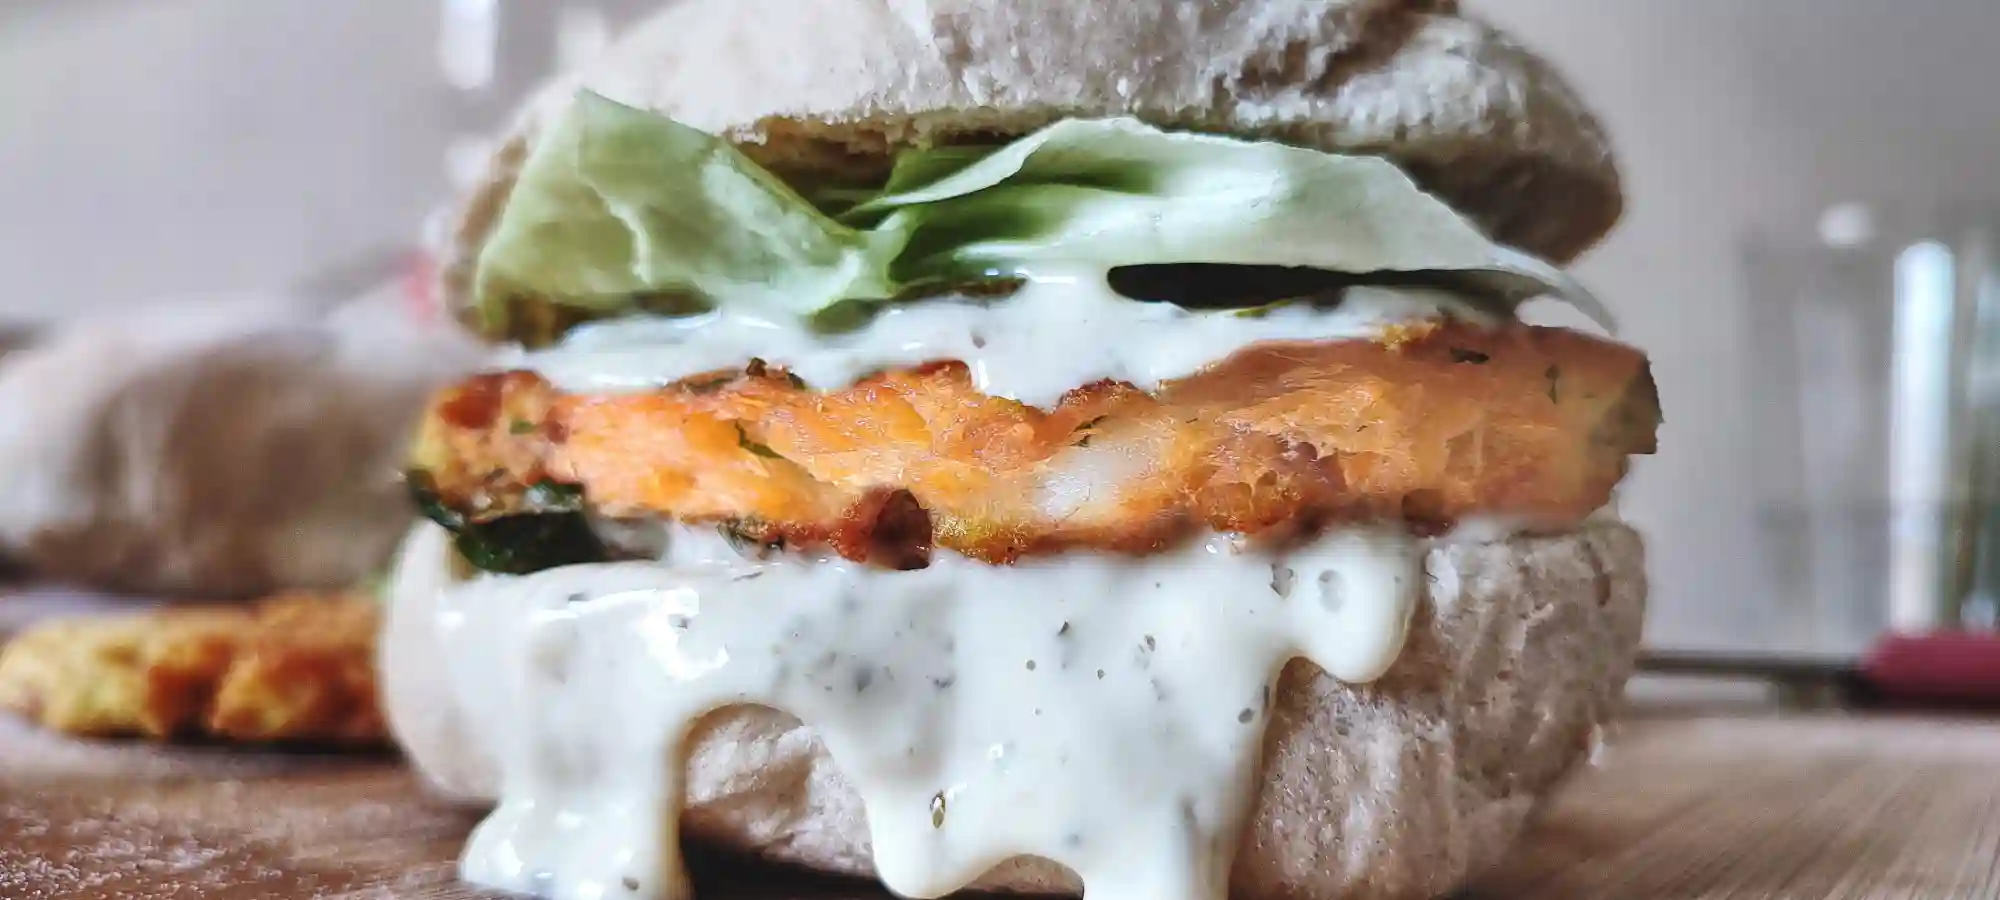 Amazing Homemade Salmon Burger With Tartar Sauce